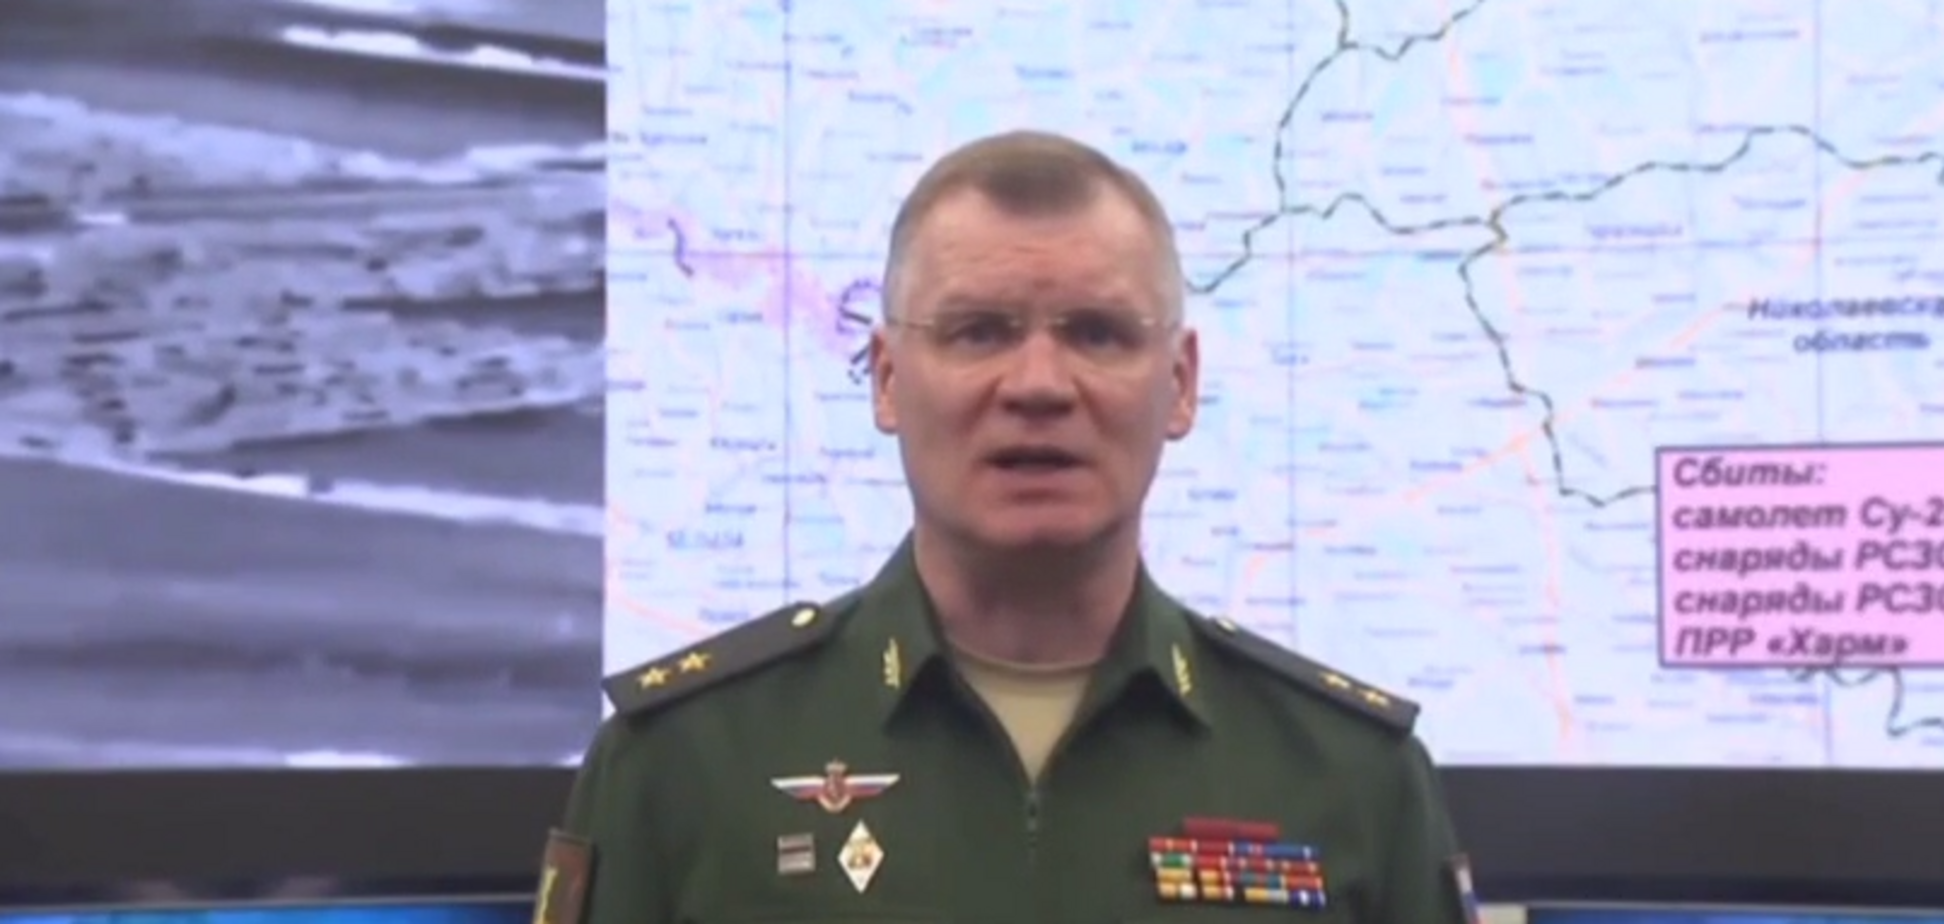 Самые ожесточенные бои происходят в голове Конашенкова: орки уже 'атаковали' американскую военную базу